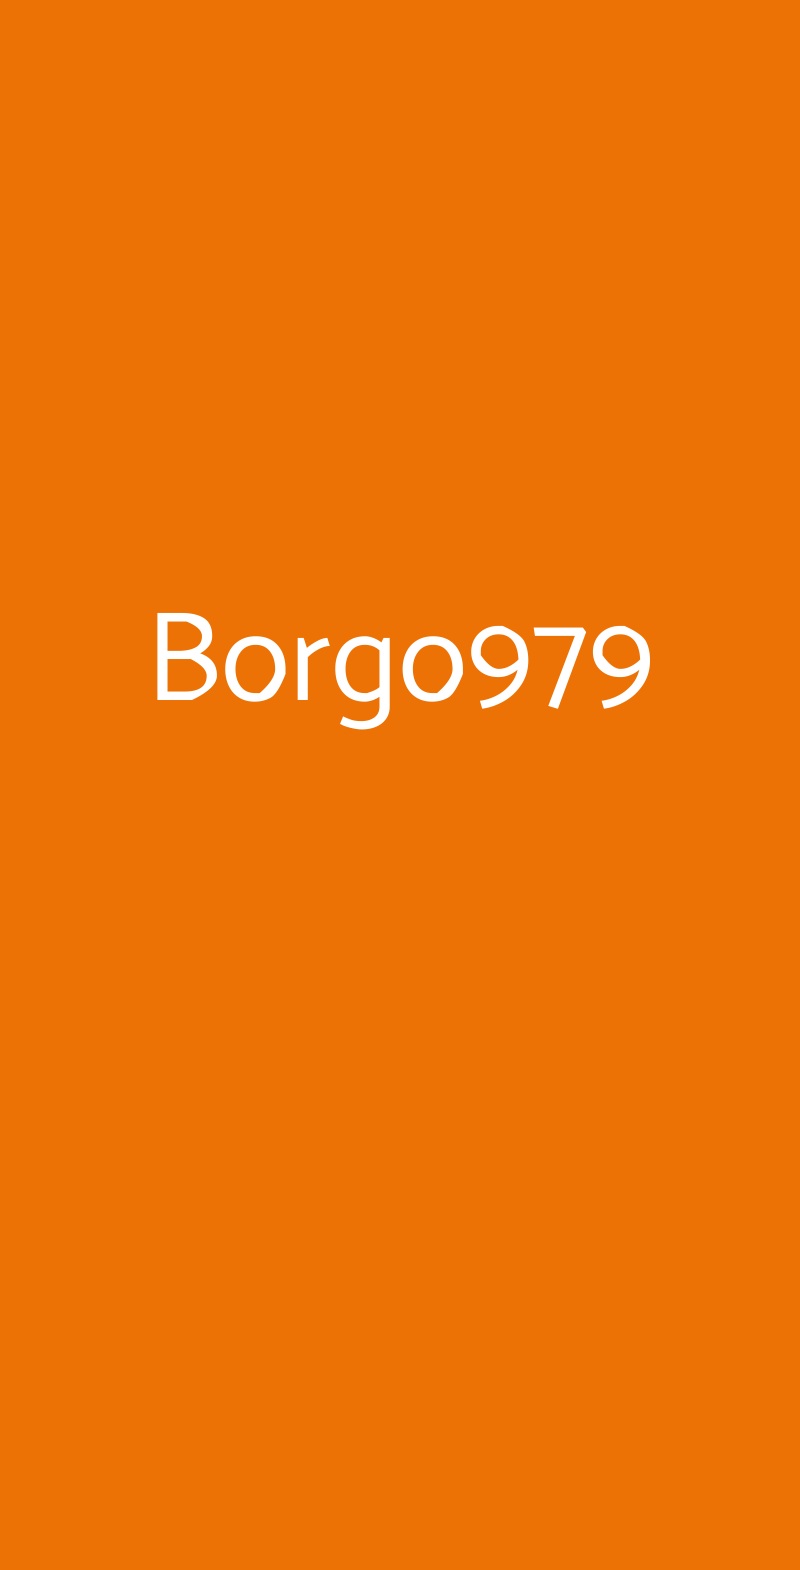 Borgo979 Bologna menù 1 pagina